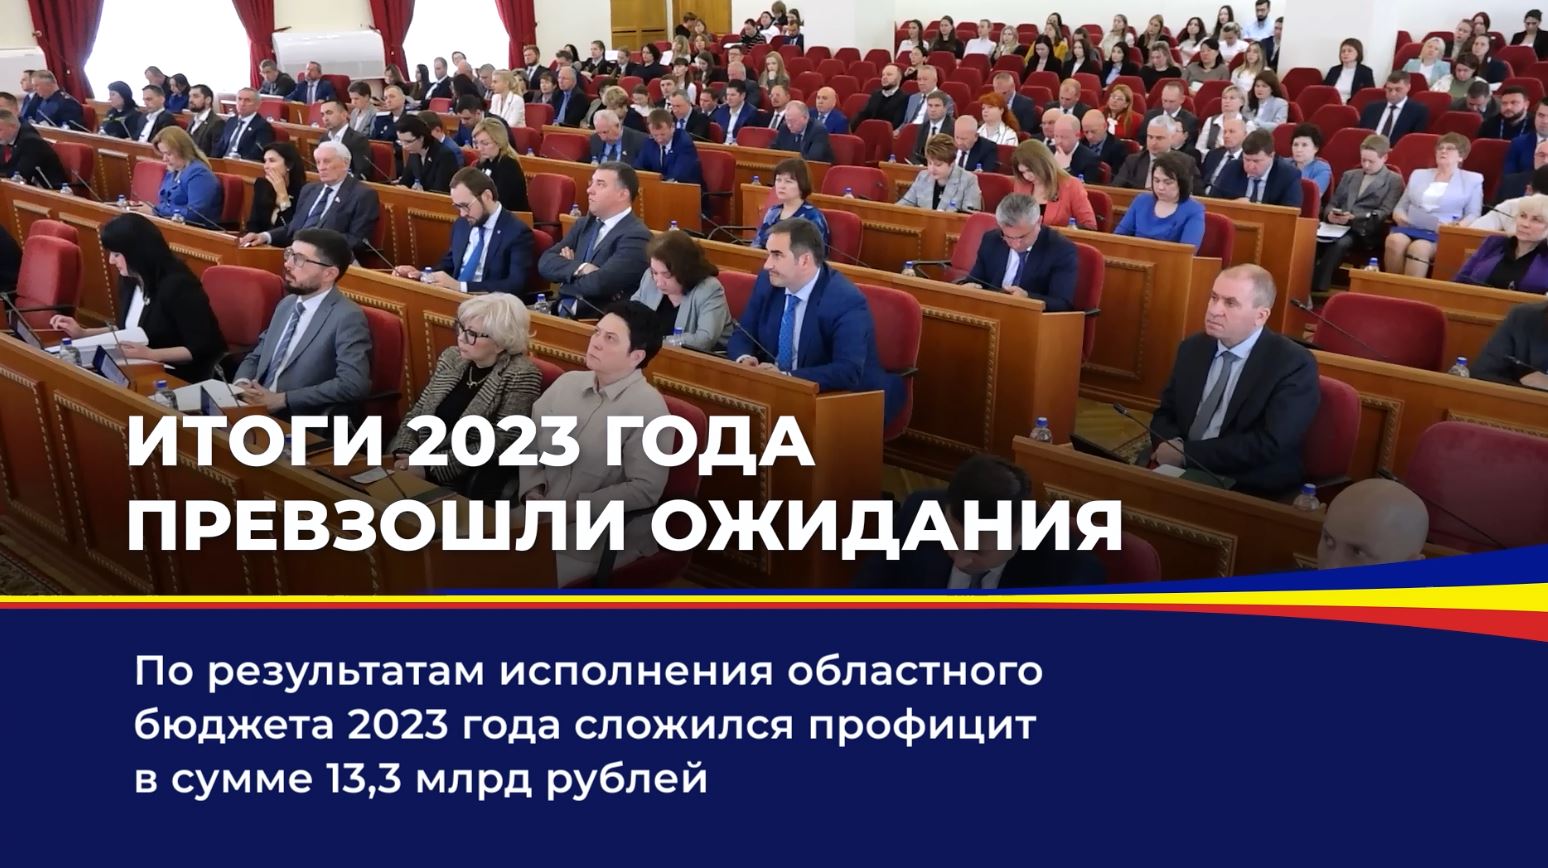 Публичные слушания по проекту областного закона «Об отчете об исполнении областного бюджета за 2023 год»